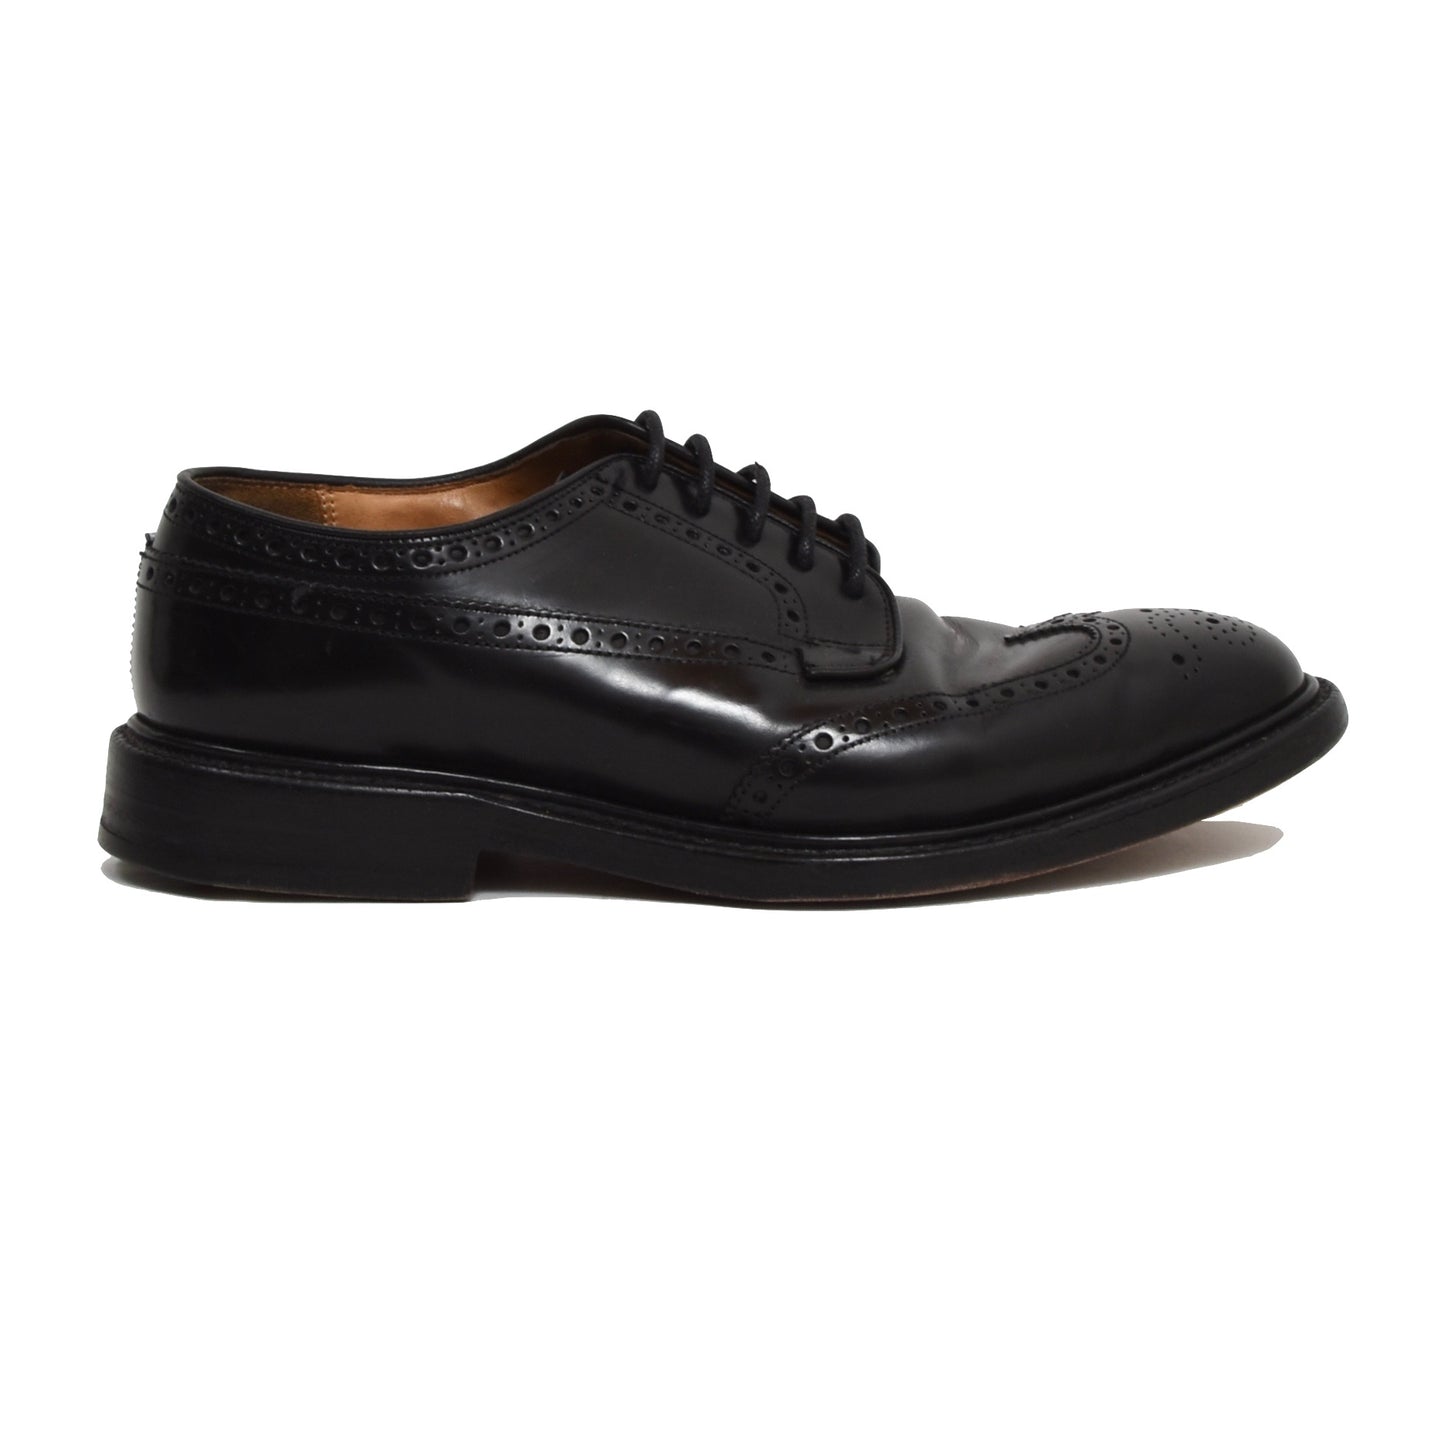 Church's Grafton Shoes Size 6G - Black